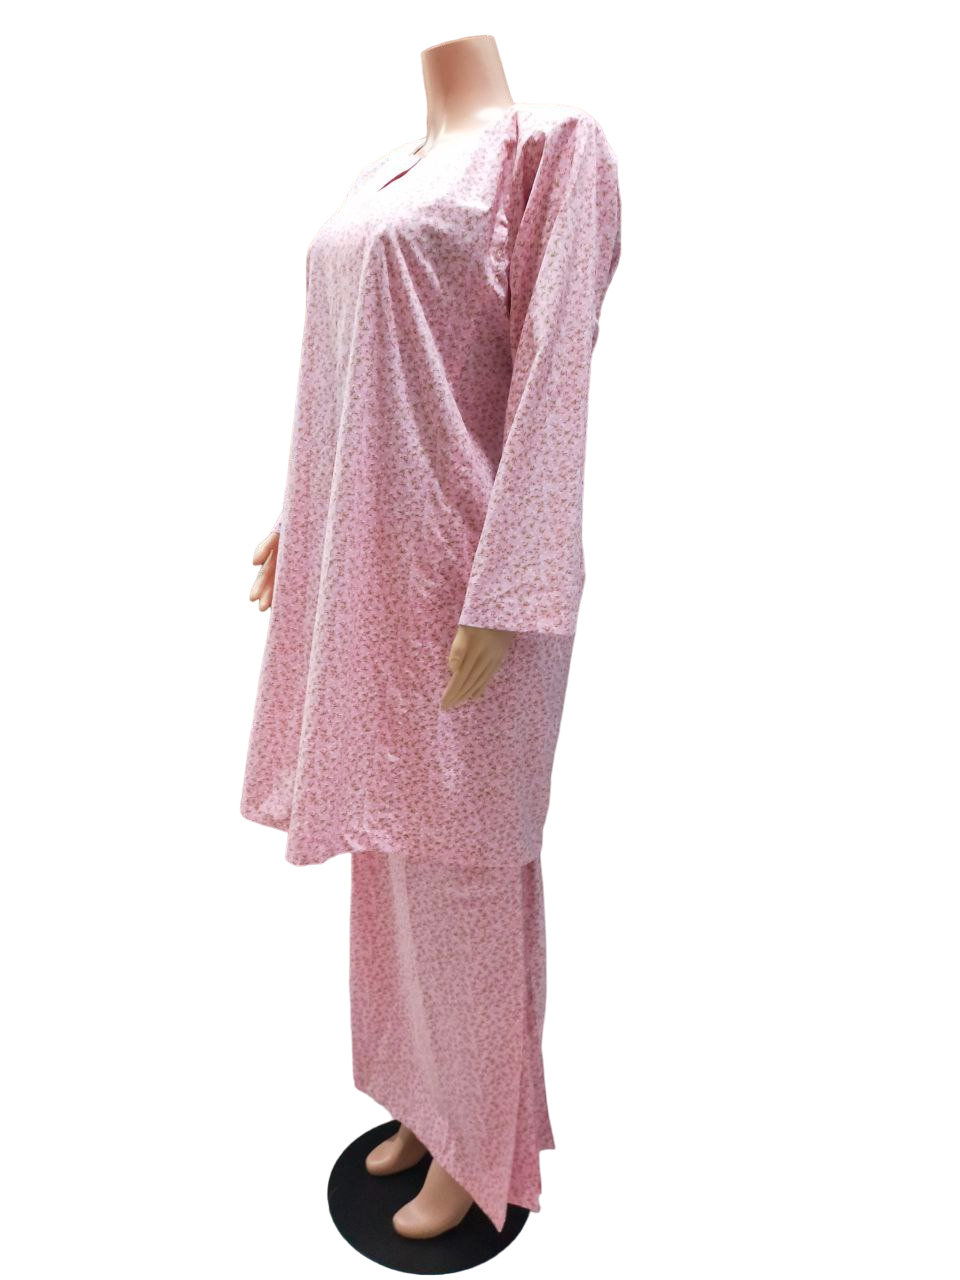 Baju Kurung Pesak Traditional Johor Pink